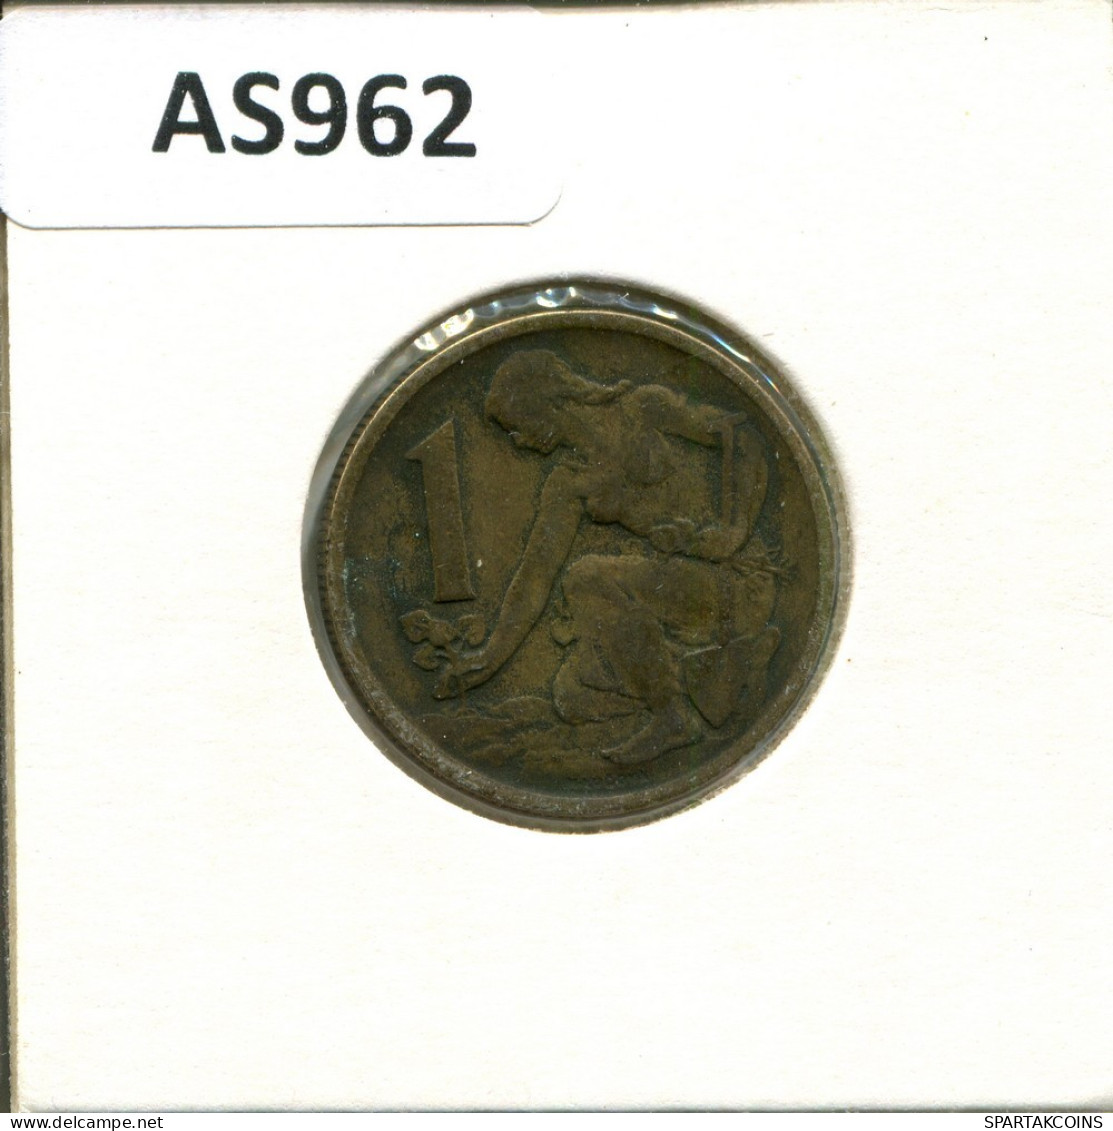 1 KORUNA 1963 CZECHOSLOVAKIA Coin #AS962.U.A - Checoslovaquia